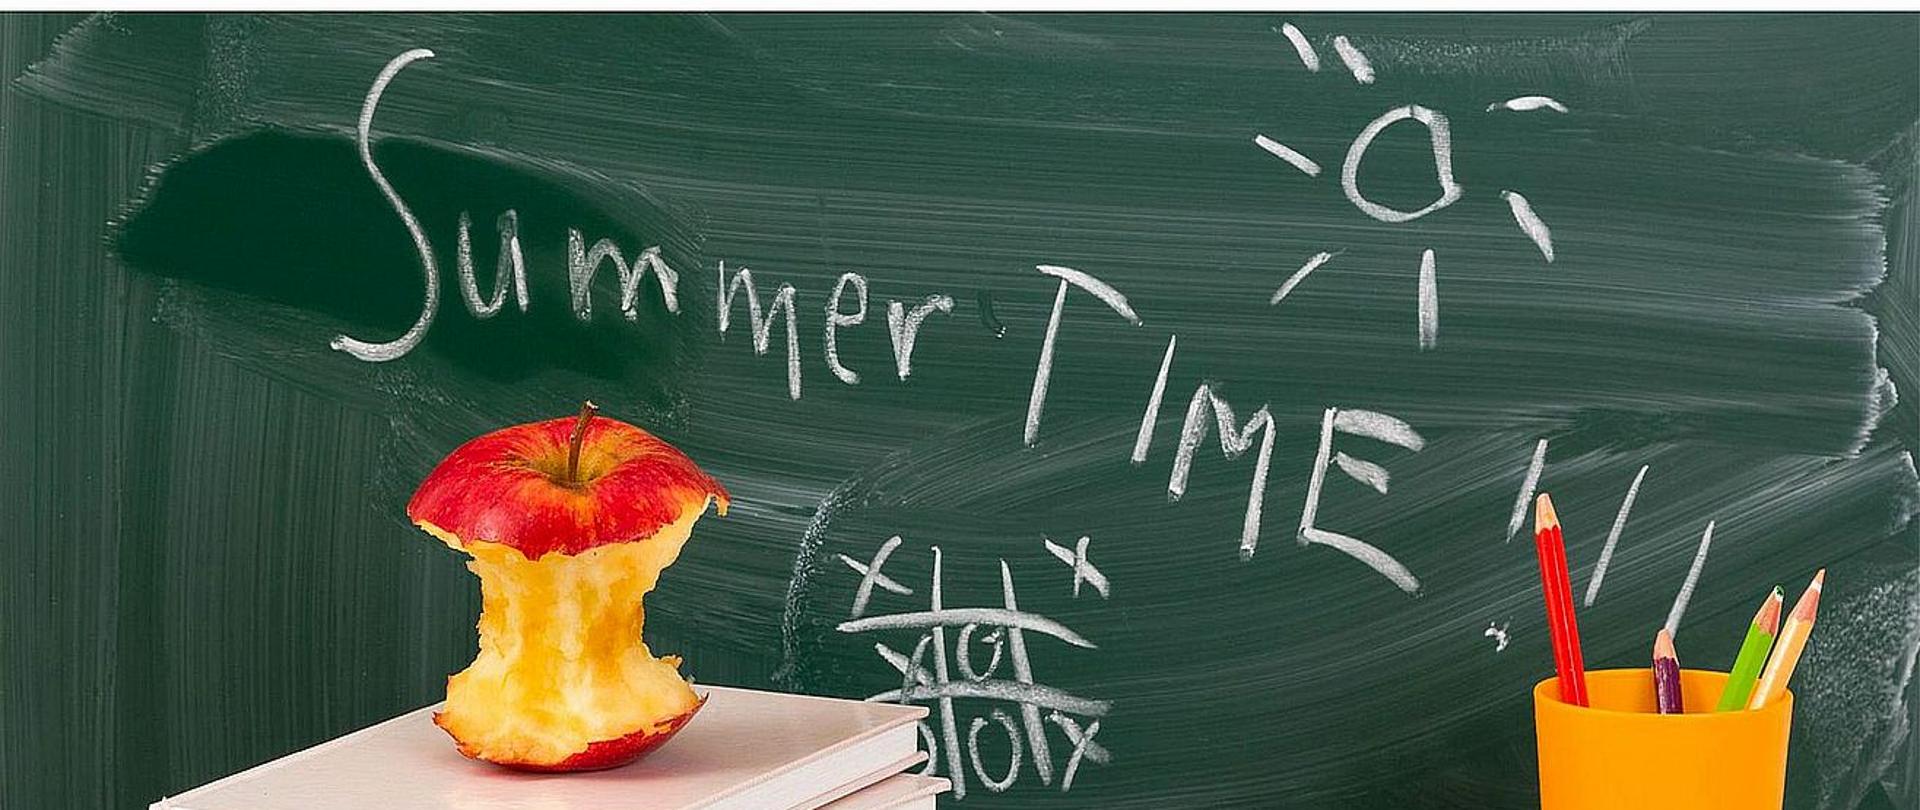 Plakat przedstawia informacje dotyczące zakończenia roku szkolnego. W centralnej części plakatu znajduje się szkolne biurko z kredkami, książkami, kubkiem i ogryzkiem jabłka leżącymi na nim. W tle tablica szkolna z napisem "Summer time".